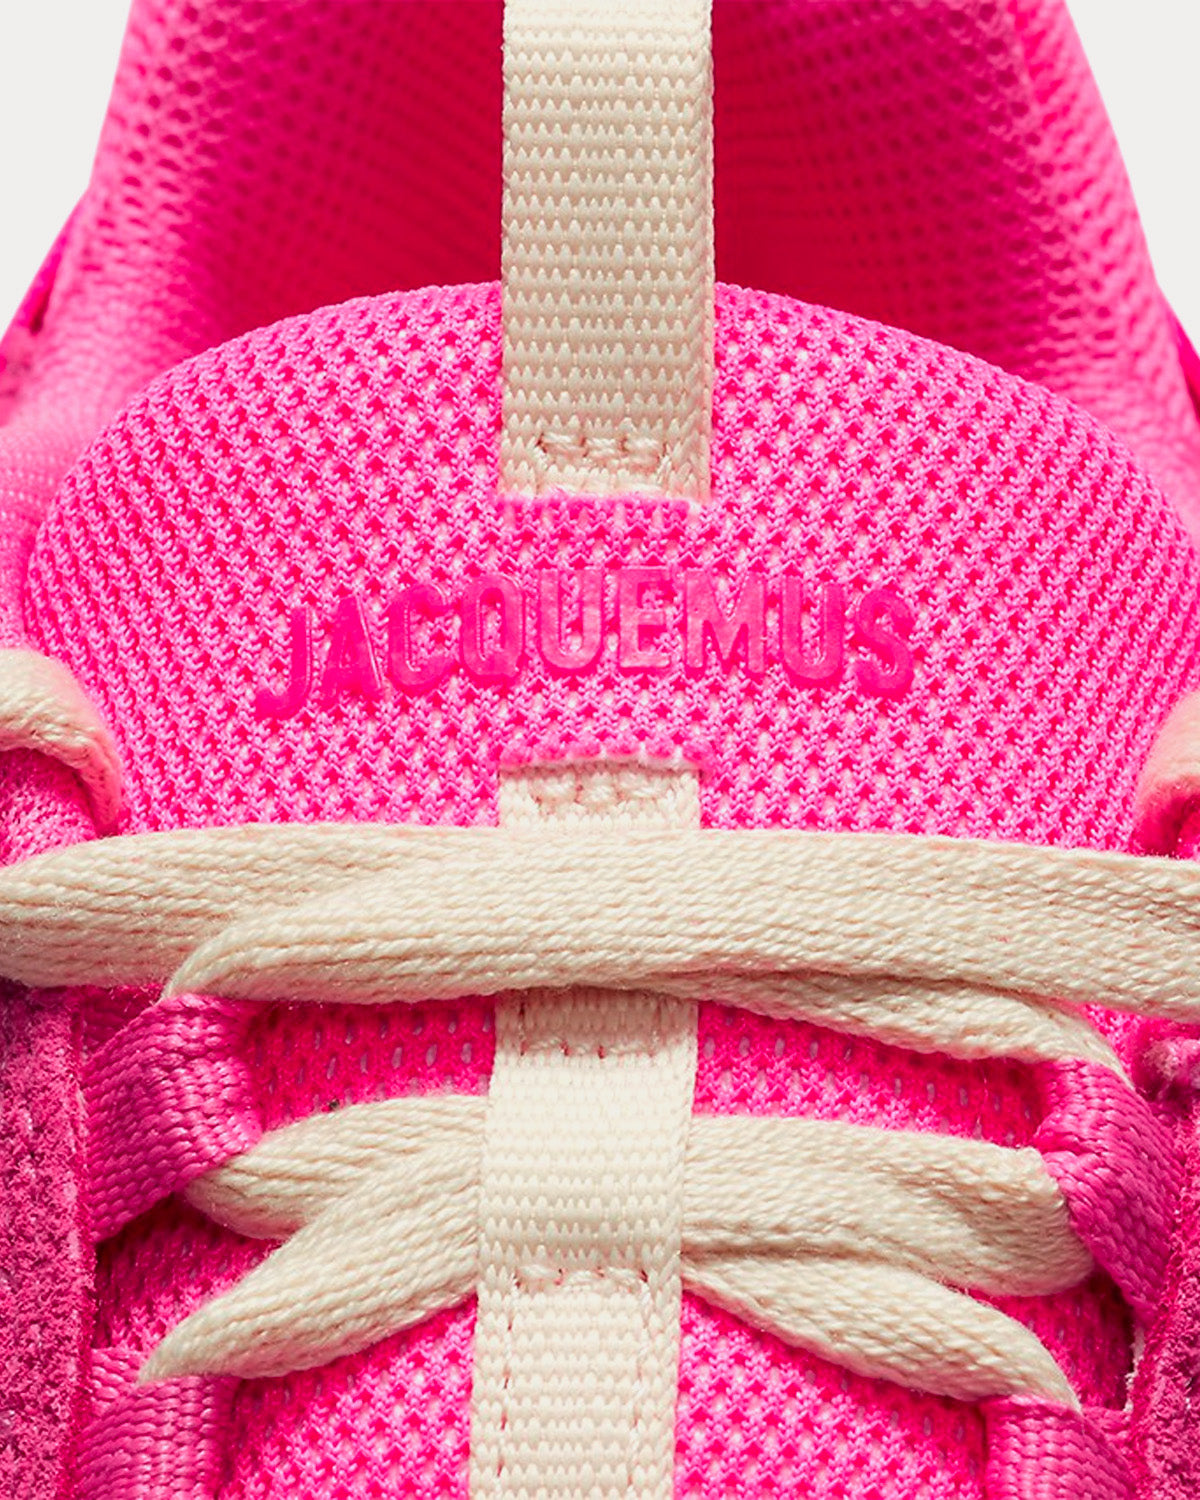 Nike x Jacquemus - Air Humara LX Pink Low Top Sneakers